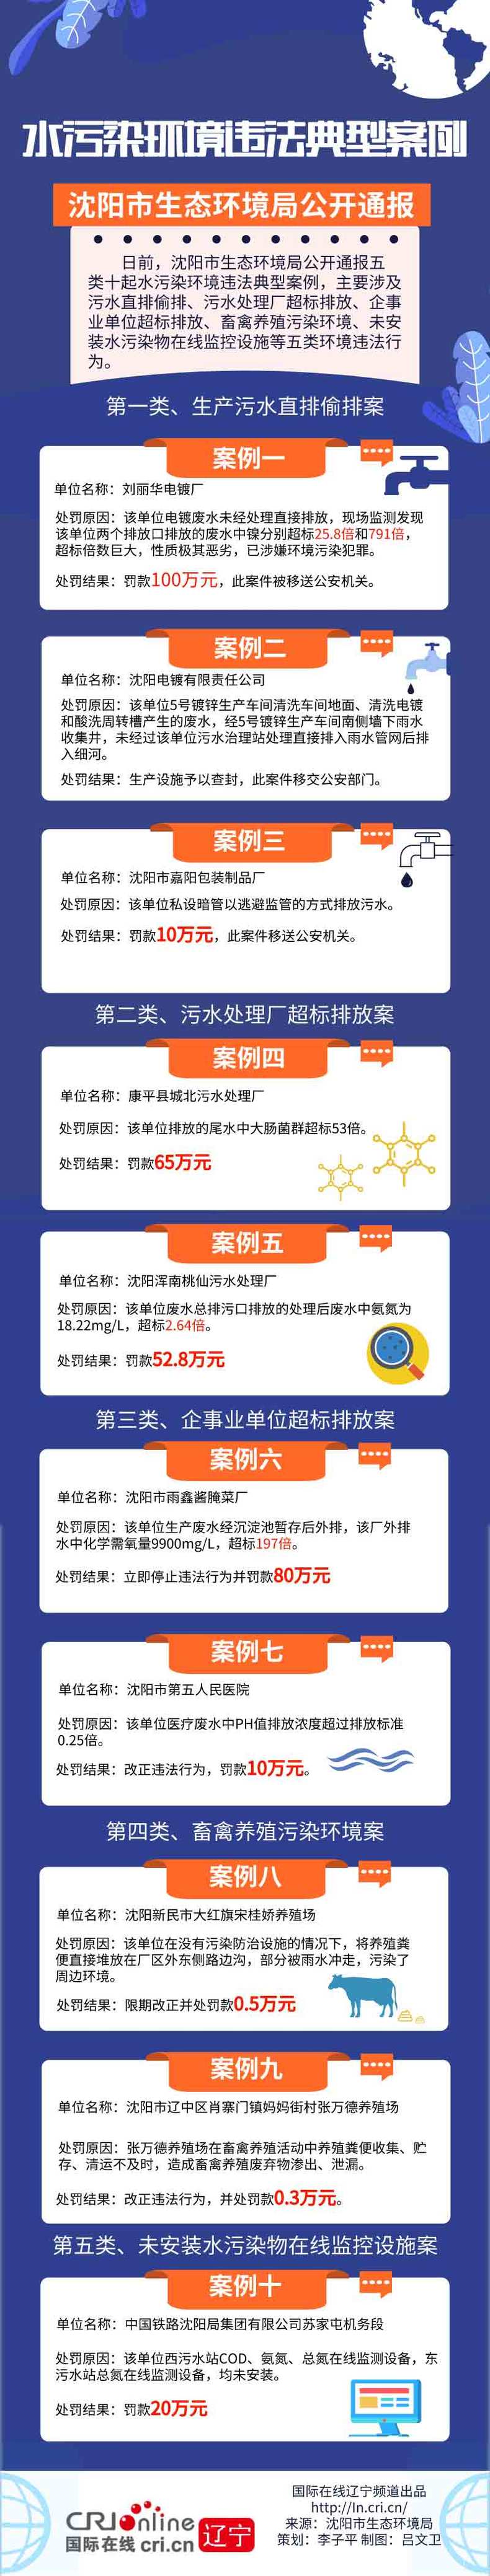 瀋陽市公開通報十起水污染環境違法典型案例